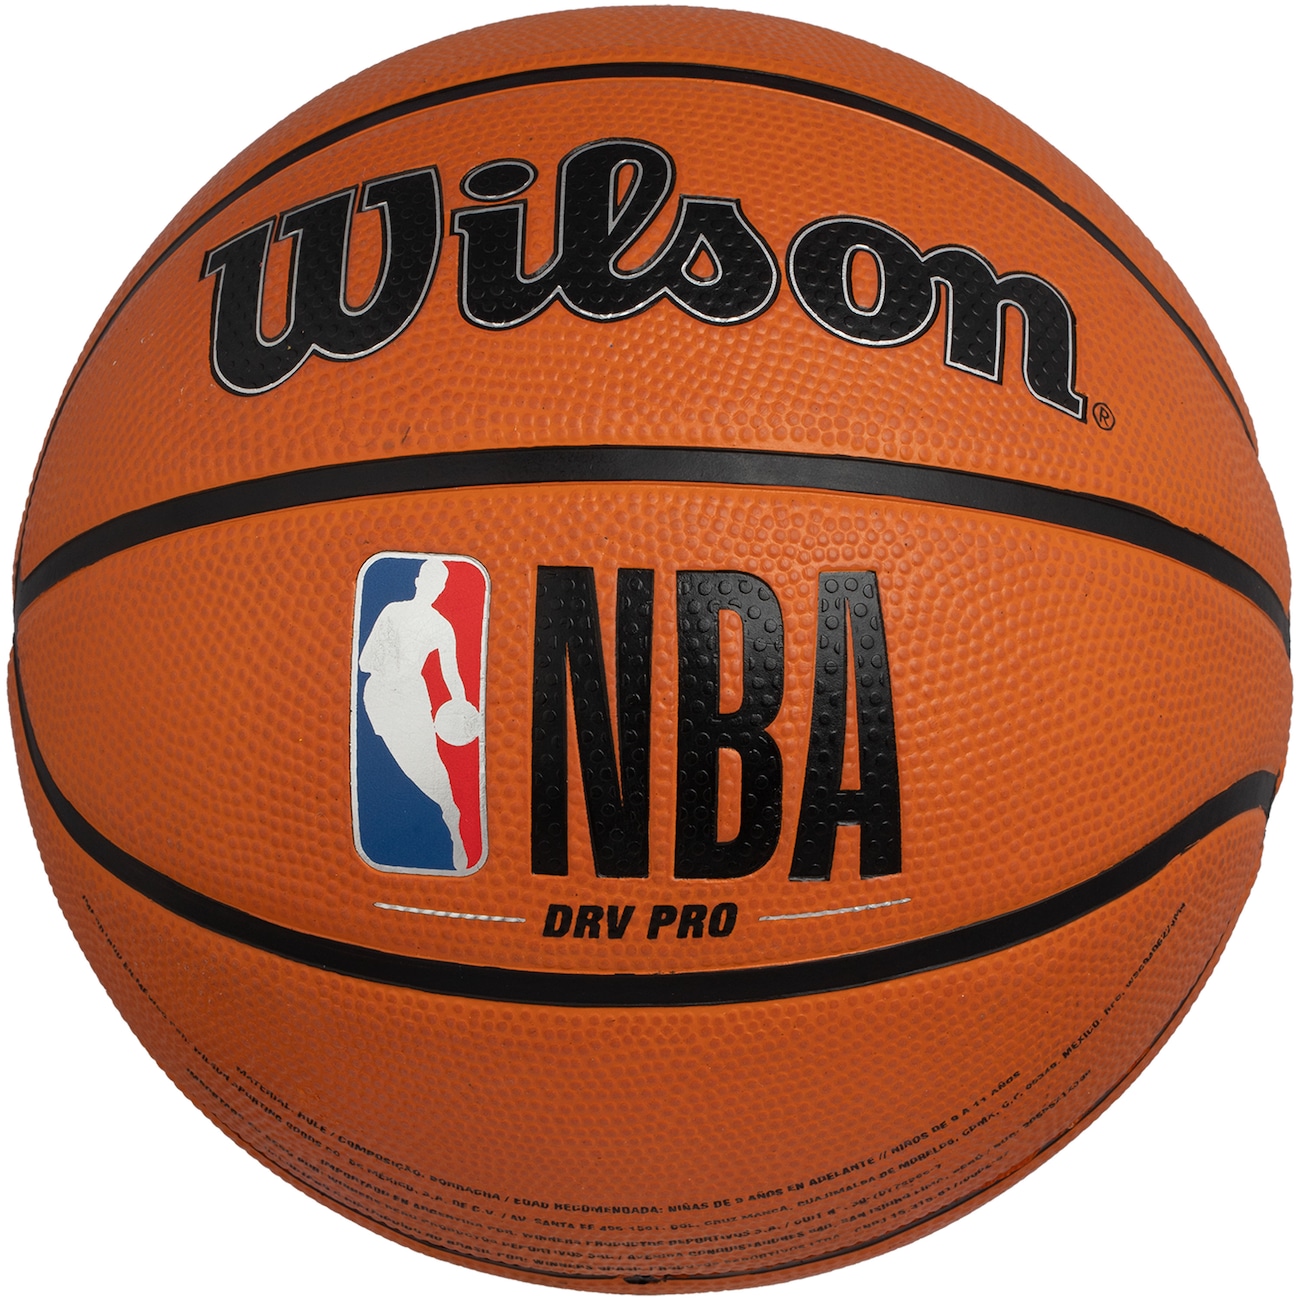 Bola de Basquete Wilson NBA Auth Series Outdoor #6